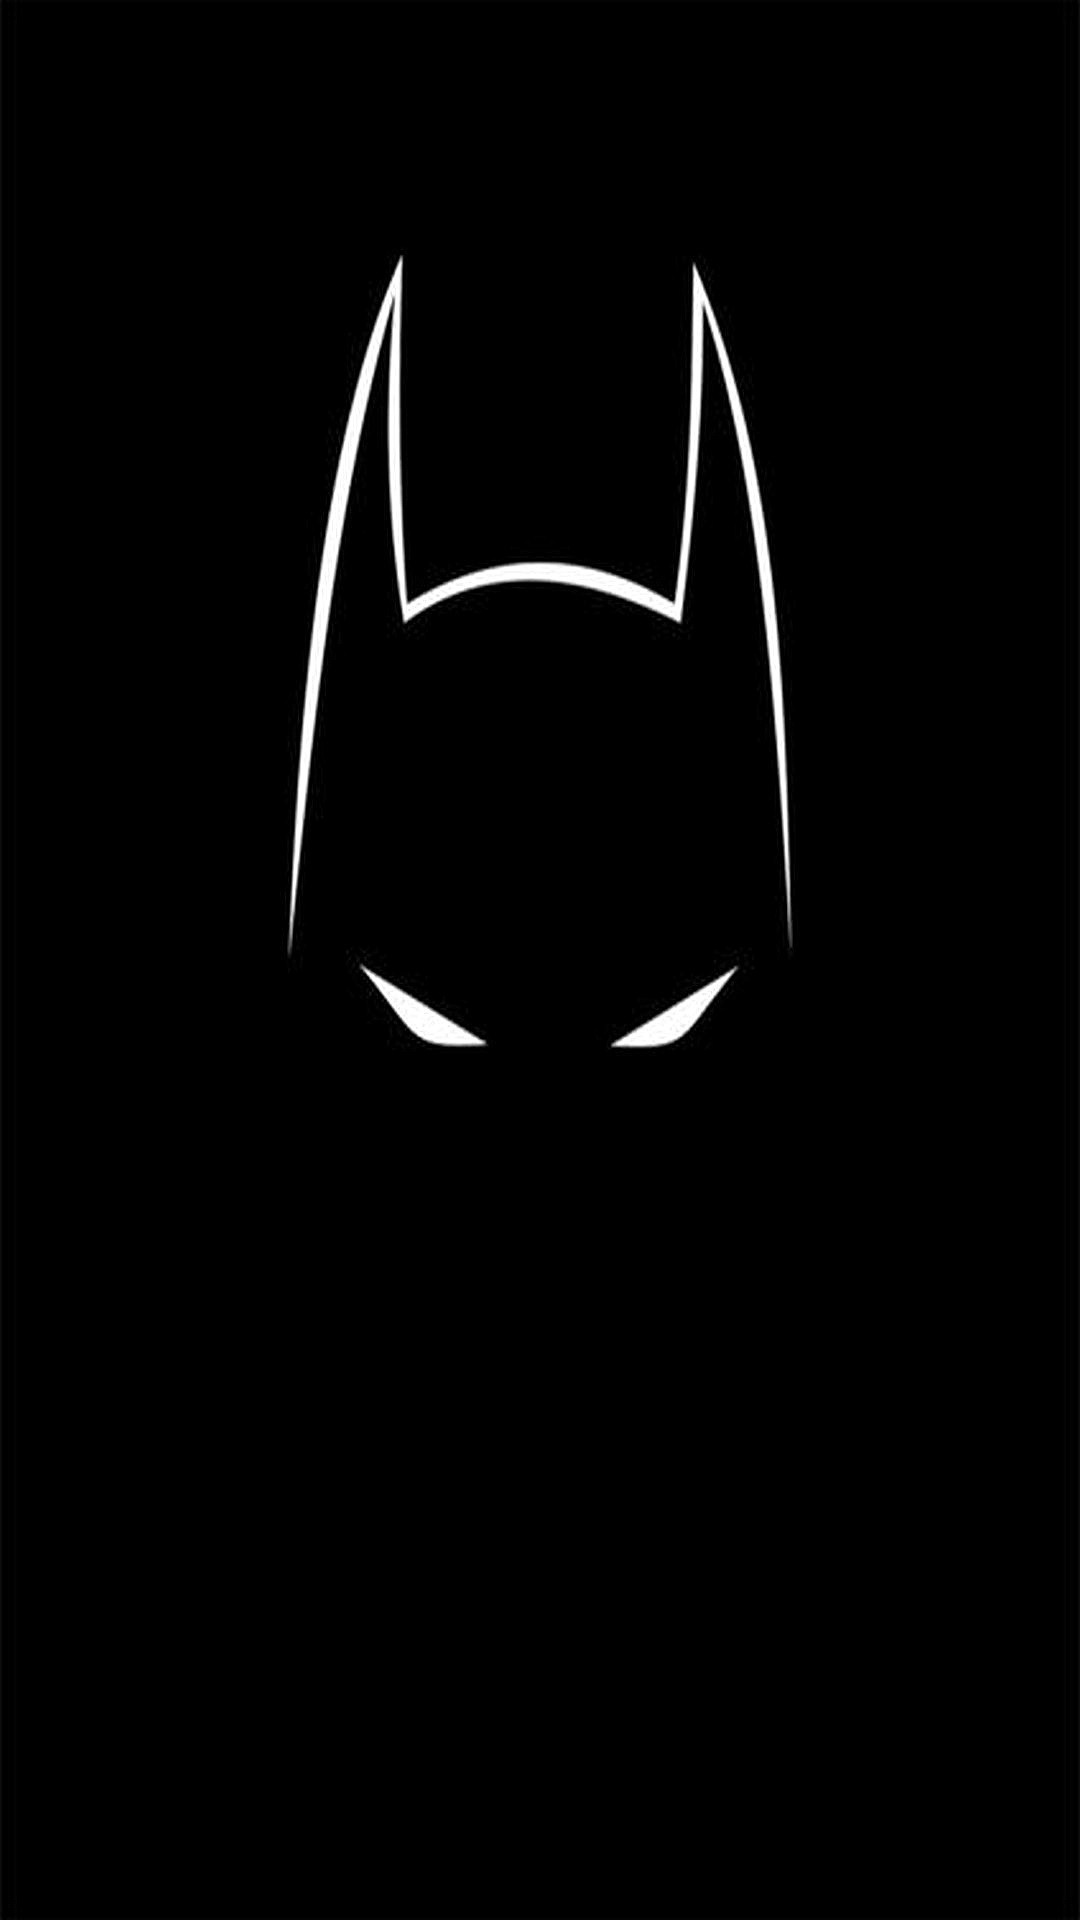 1080x1920 Batman Wallpaper HD download free | HD Wallpapers | Pinterest | Dark  knight, Wallpaper and Knight